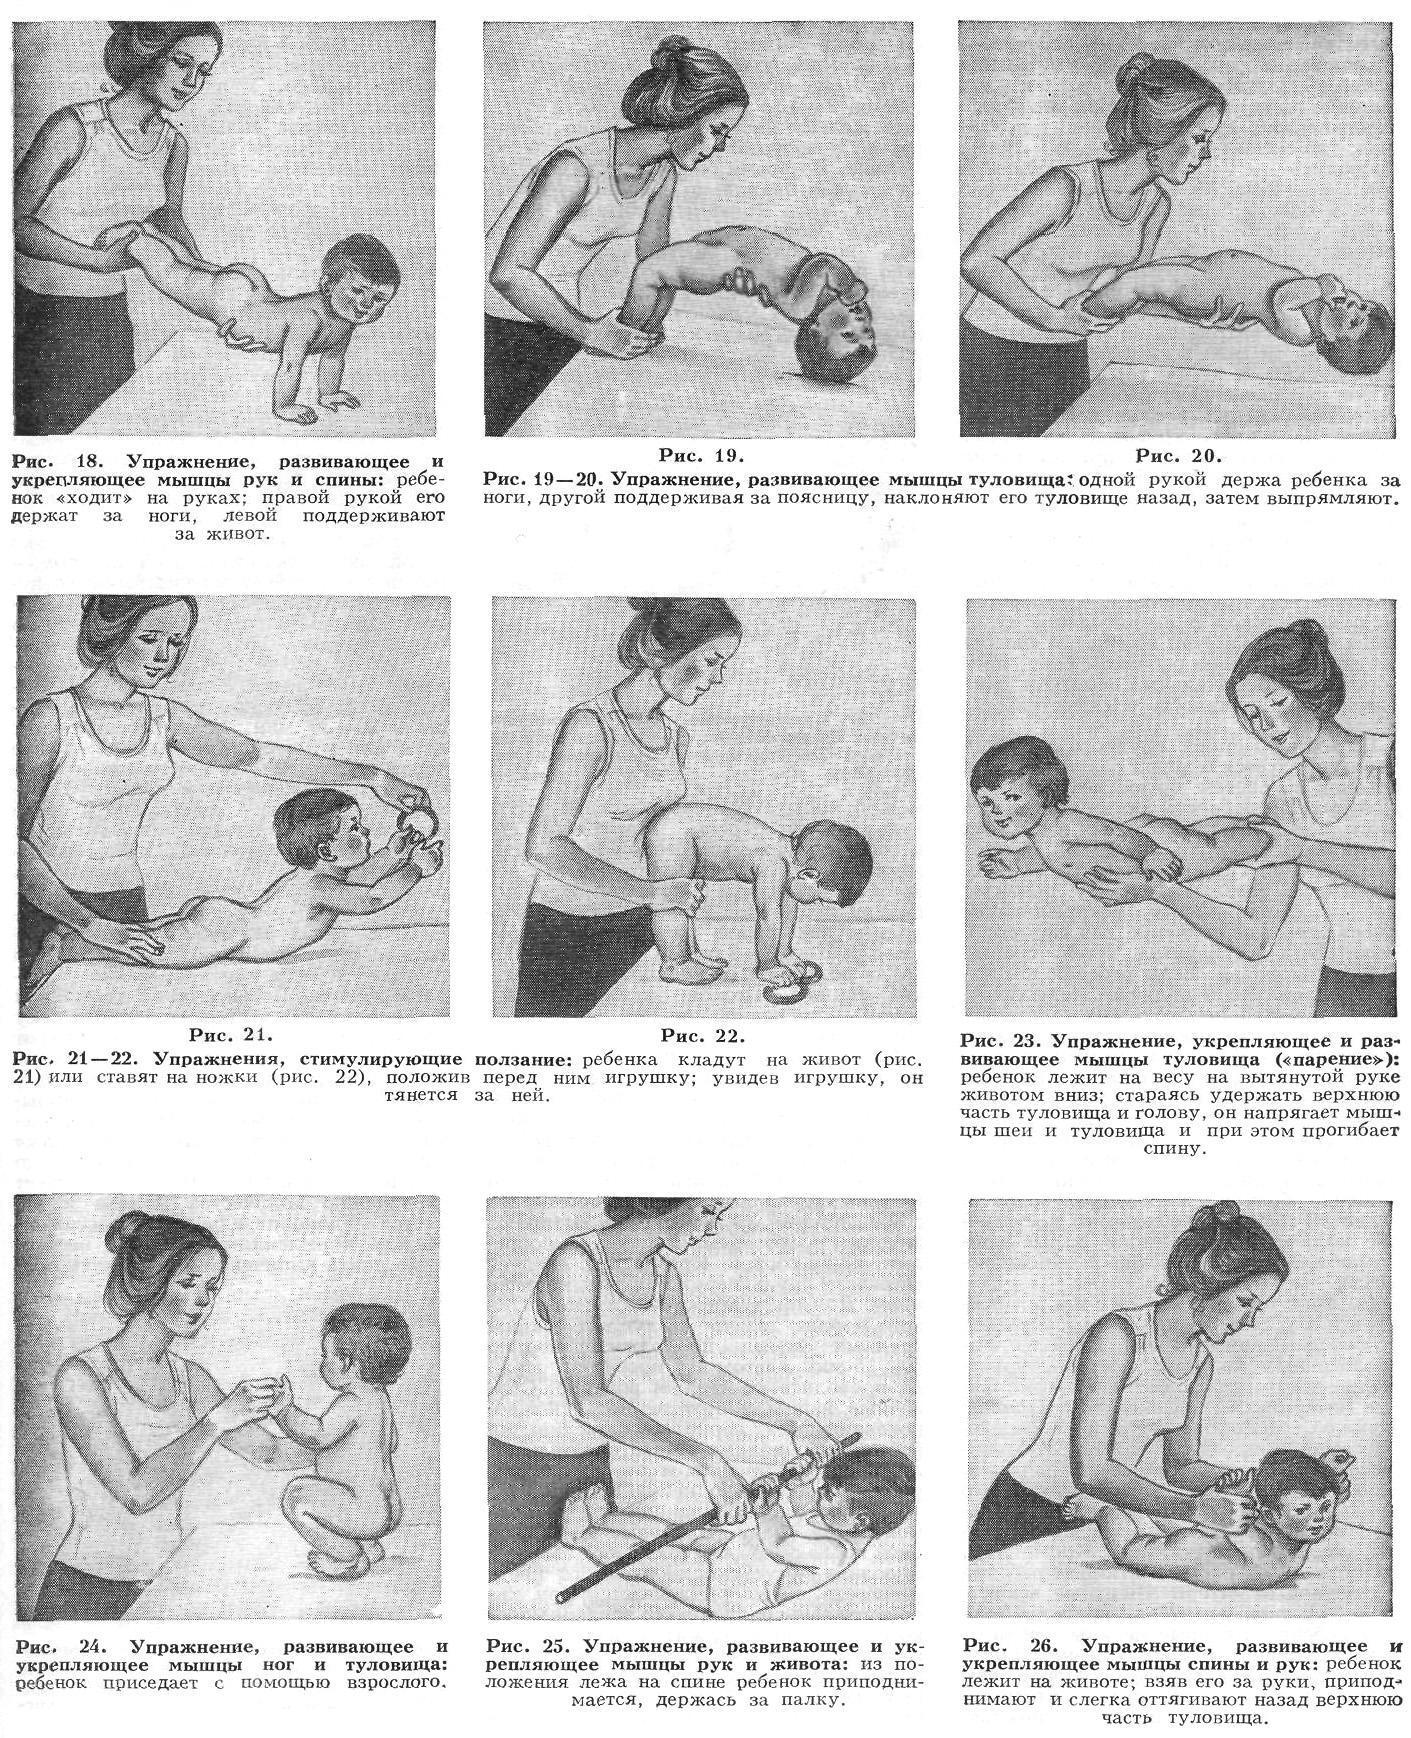 Массаж в 6 месяцев. Гимнастический комплекс упражнений для ребенка 7 месяцев. Массаж для укрепления мышц спины грудничка в 4 месяца. Массаж для грудничка 7 месяцев укрепление спины. Массаж для укрепления мышц спины ребенку 9 месяцев.